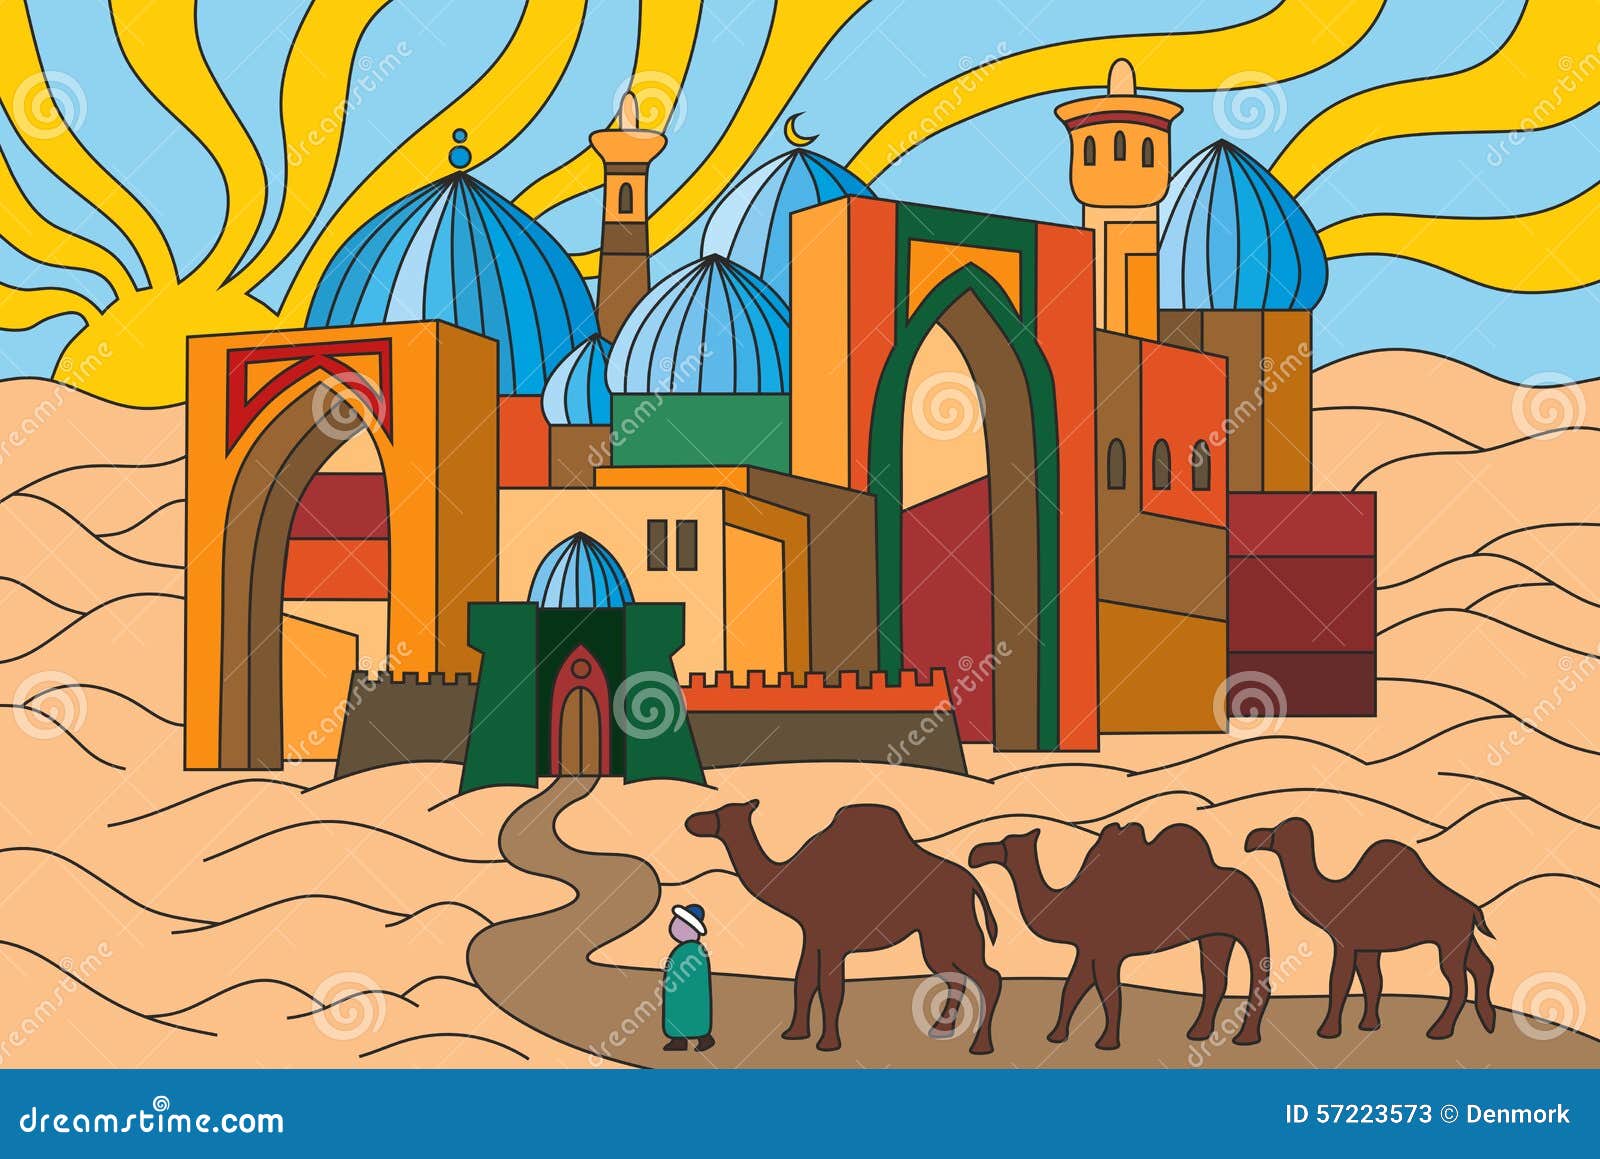 Конспект урока изо города в пустыне. Город в пустыне. Образ древнего среднеазиатского города. Город в пустыне рисунок. Образ города в пустыне.